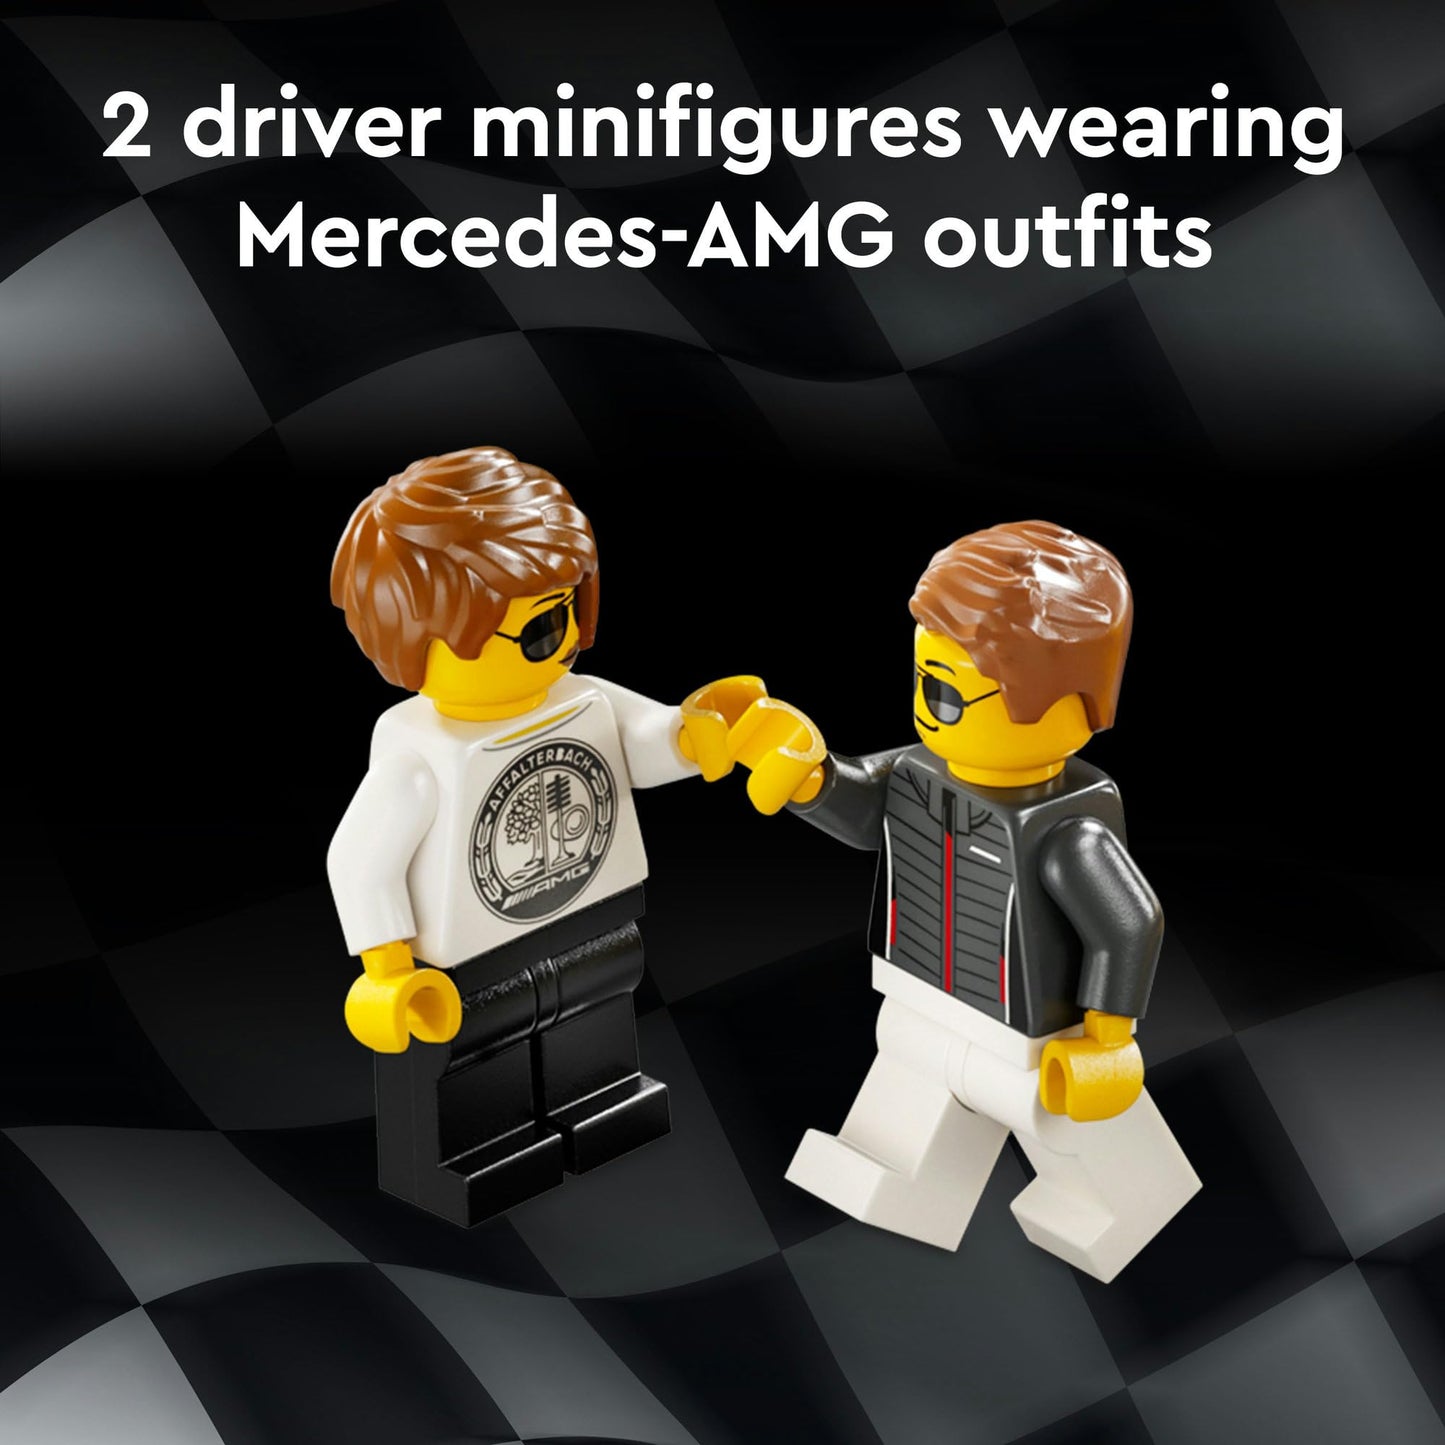 LEGO® Speed Champions Mercedes-AMG G 63 & Mercedes-AMG SL 63 76924